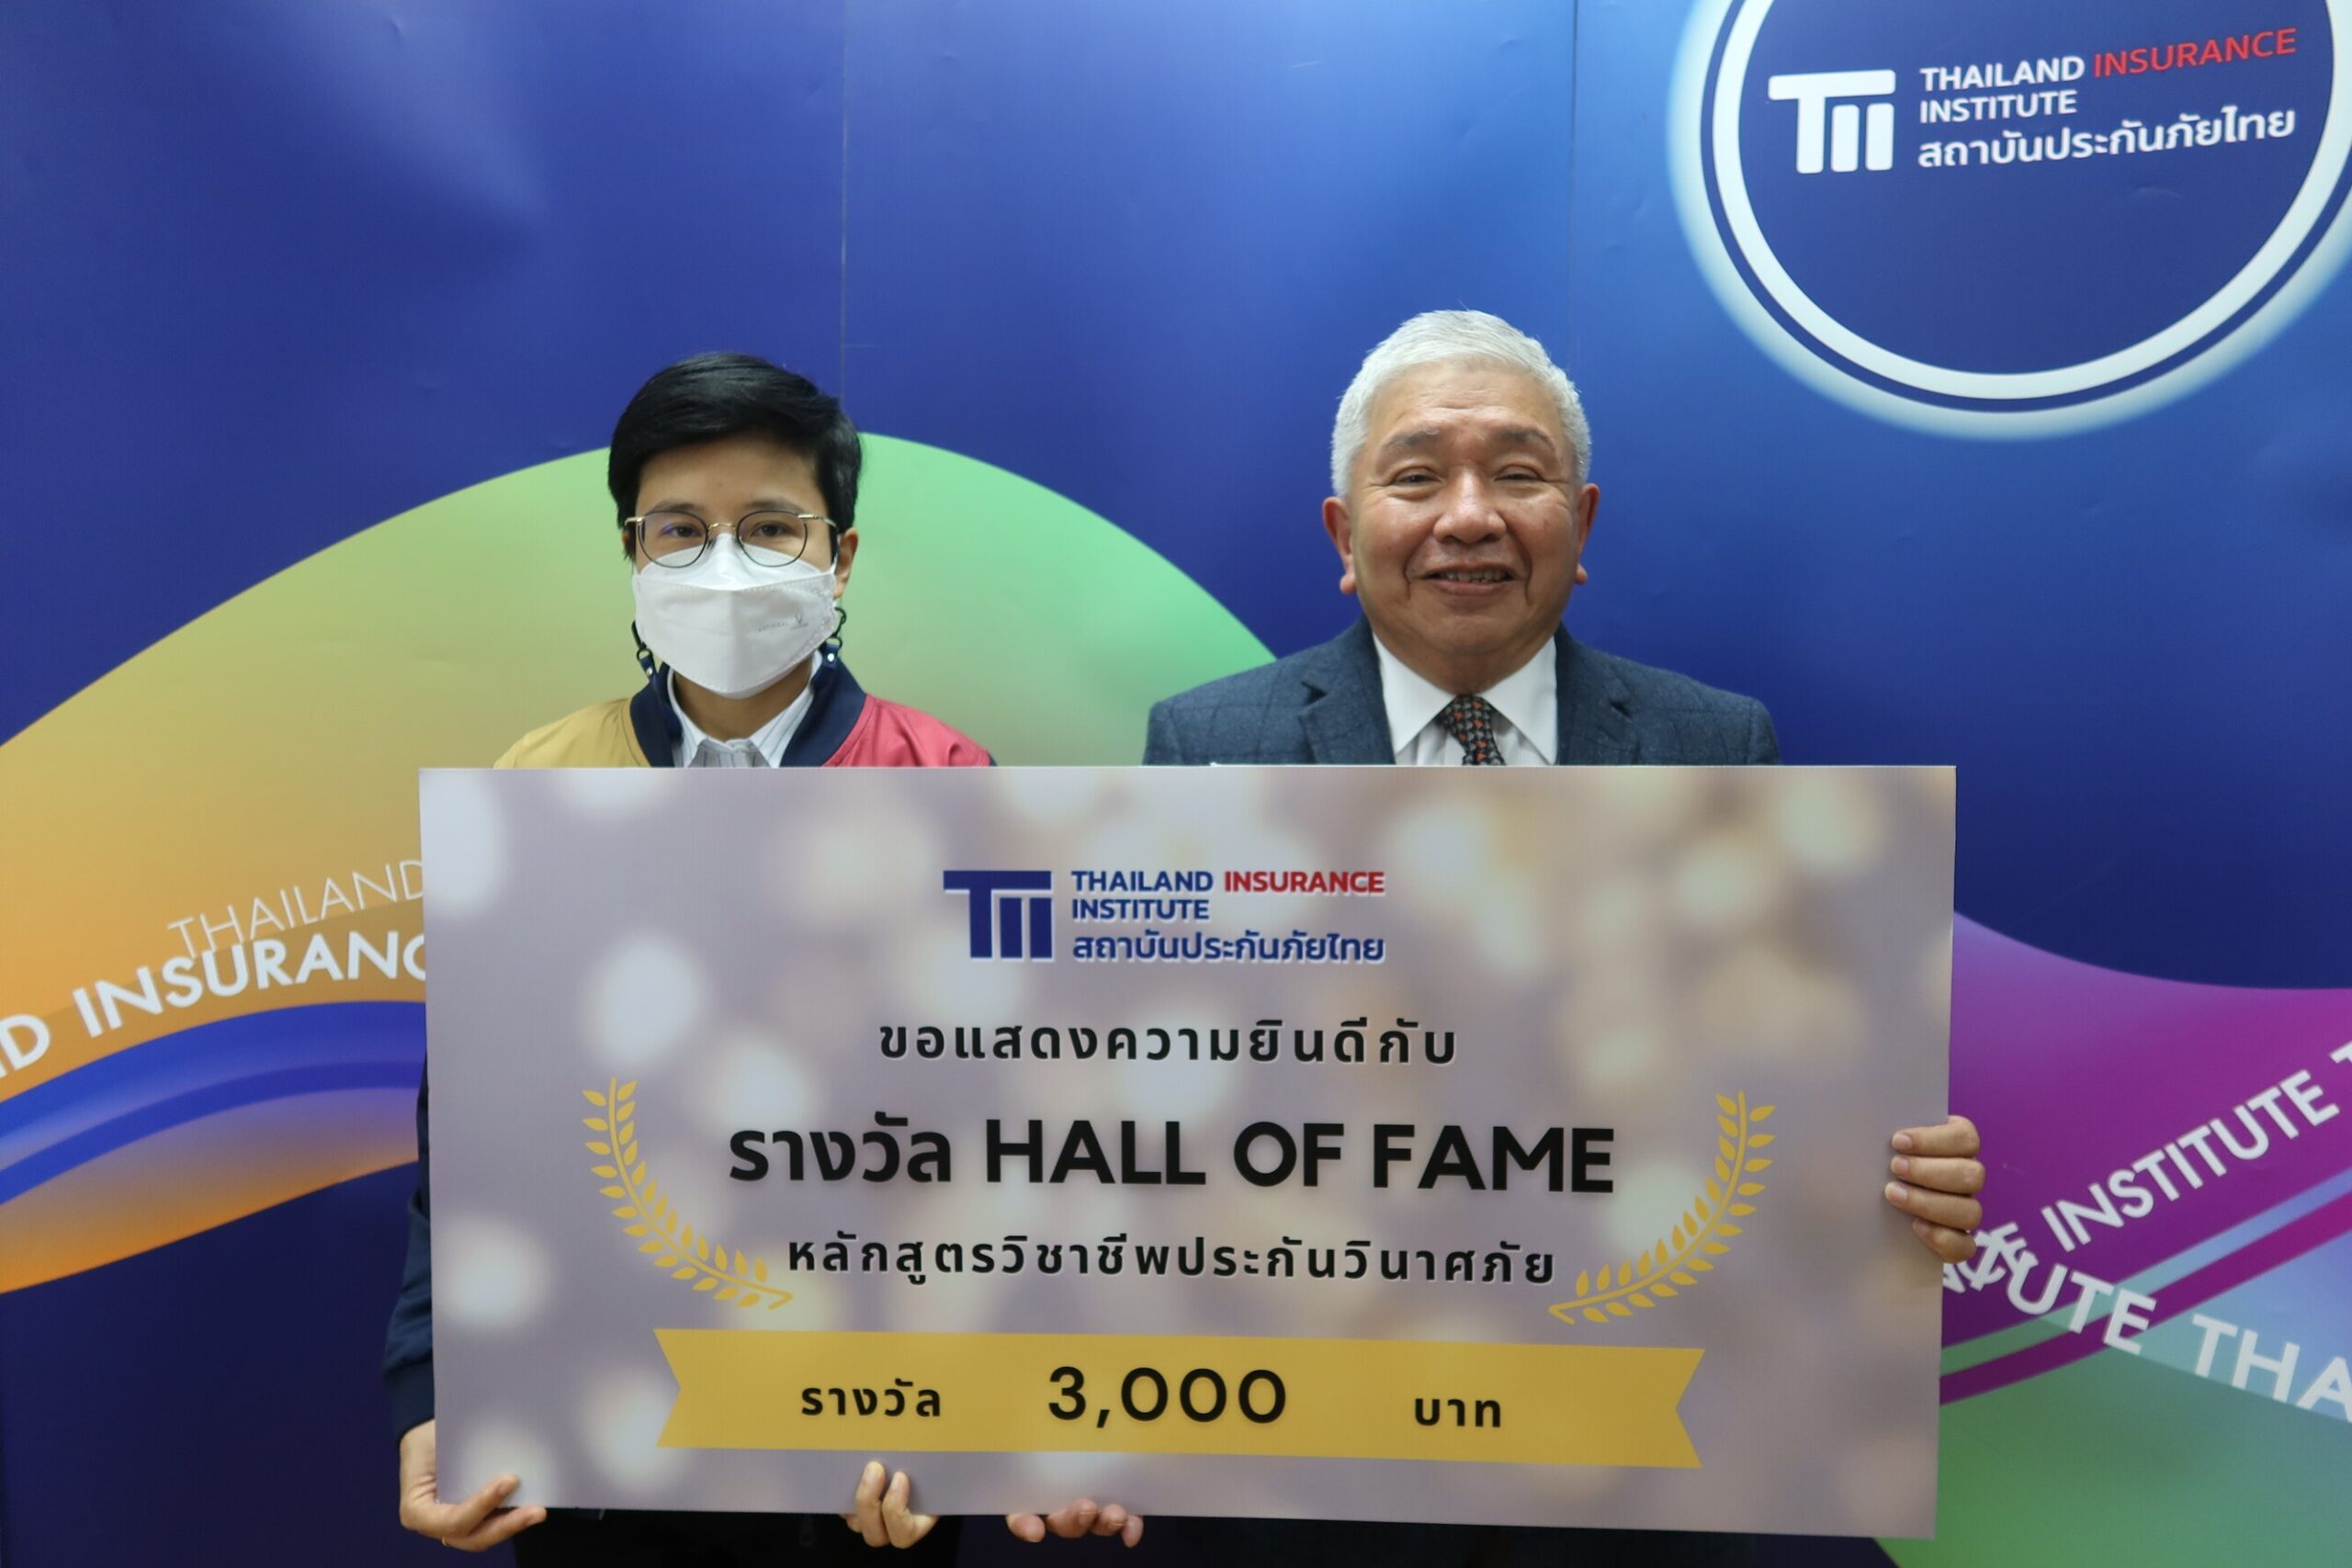 คุณทัตเทพ สุจิตจร ผู้อำนวยการสถาบันประกันภัยไทย มอบรางวัล Hall of Fame ให้แก่ผู้ที่มีผลการเรียนได้เกรด A 5 วิชา หลักสูตรวิชาชีพประกันวินาศภัย ประจำปี 2565 2